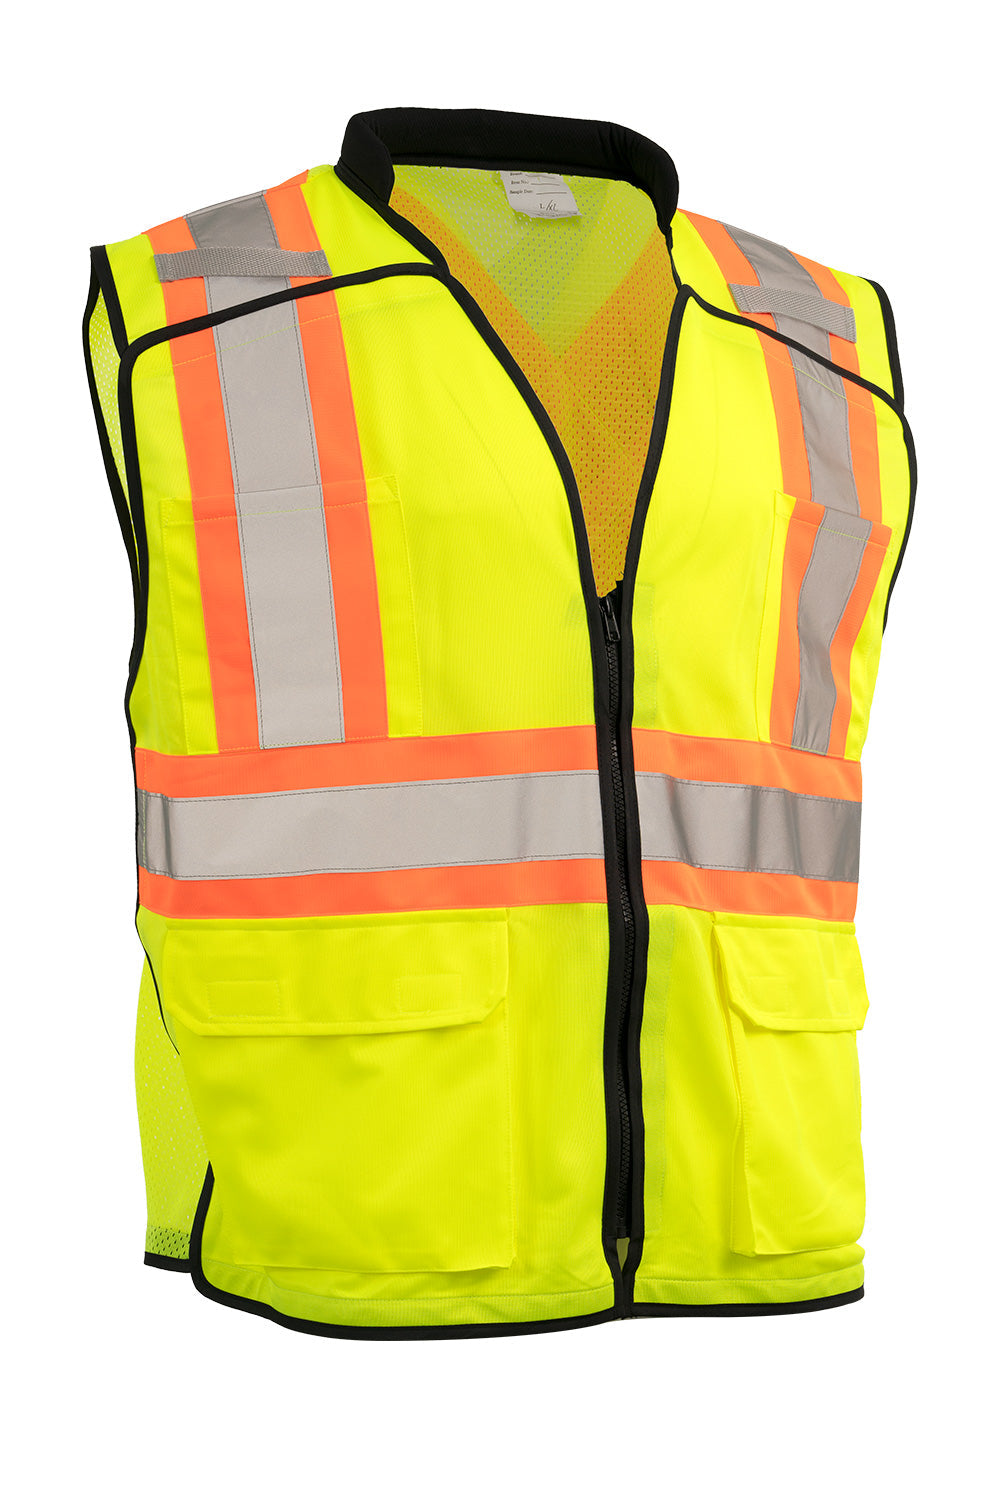 Zip-Up Hi Vis Traffic Safety Vest, 5 Point Tear-Away